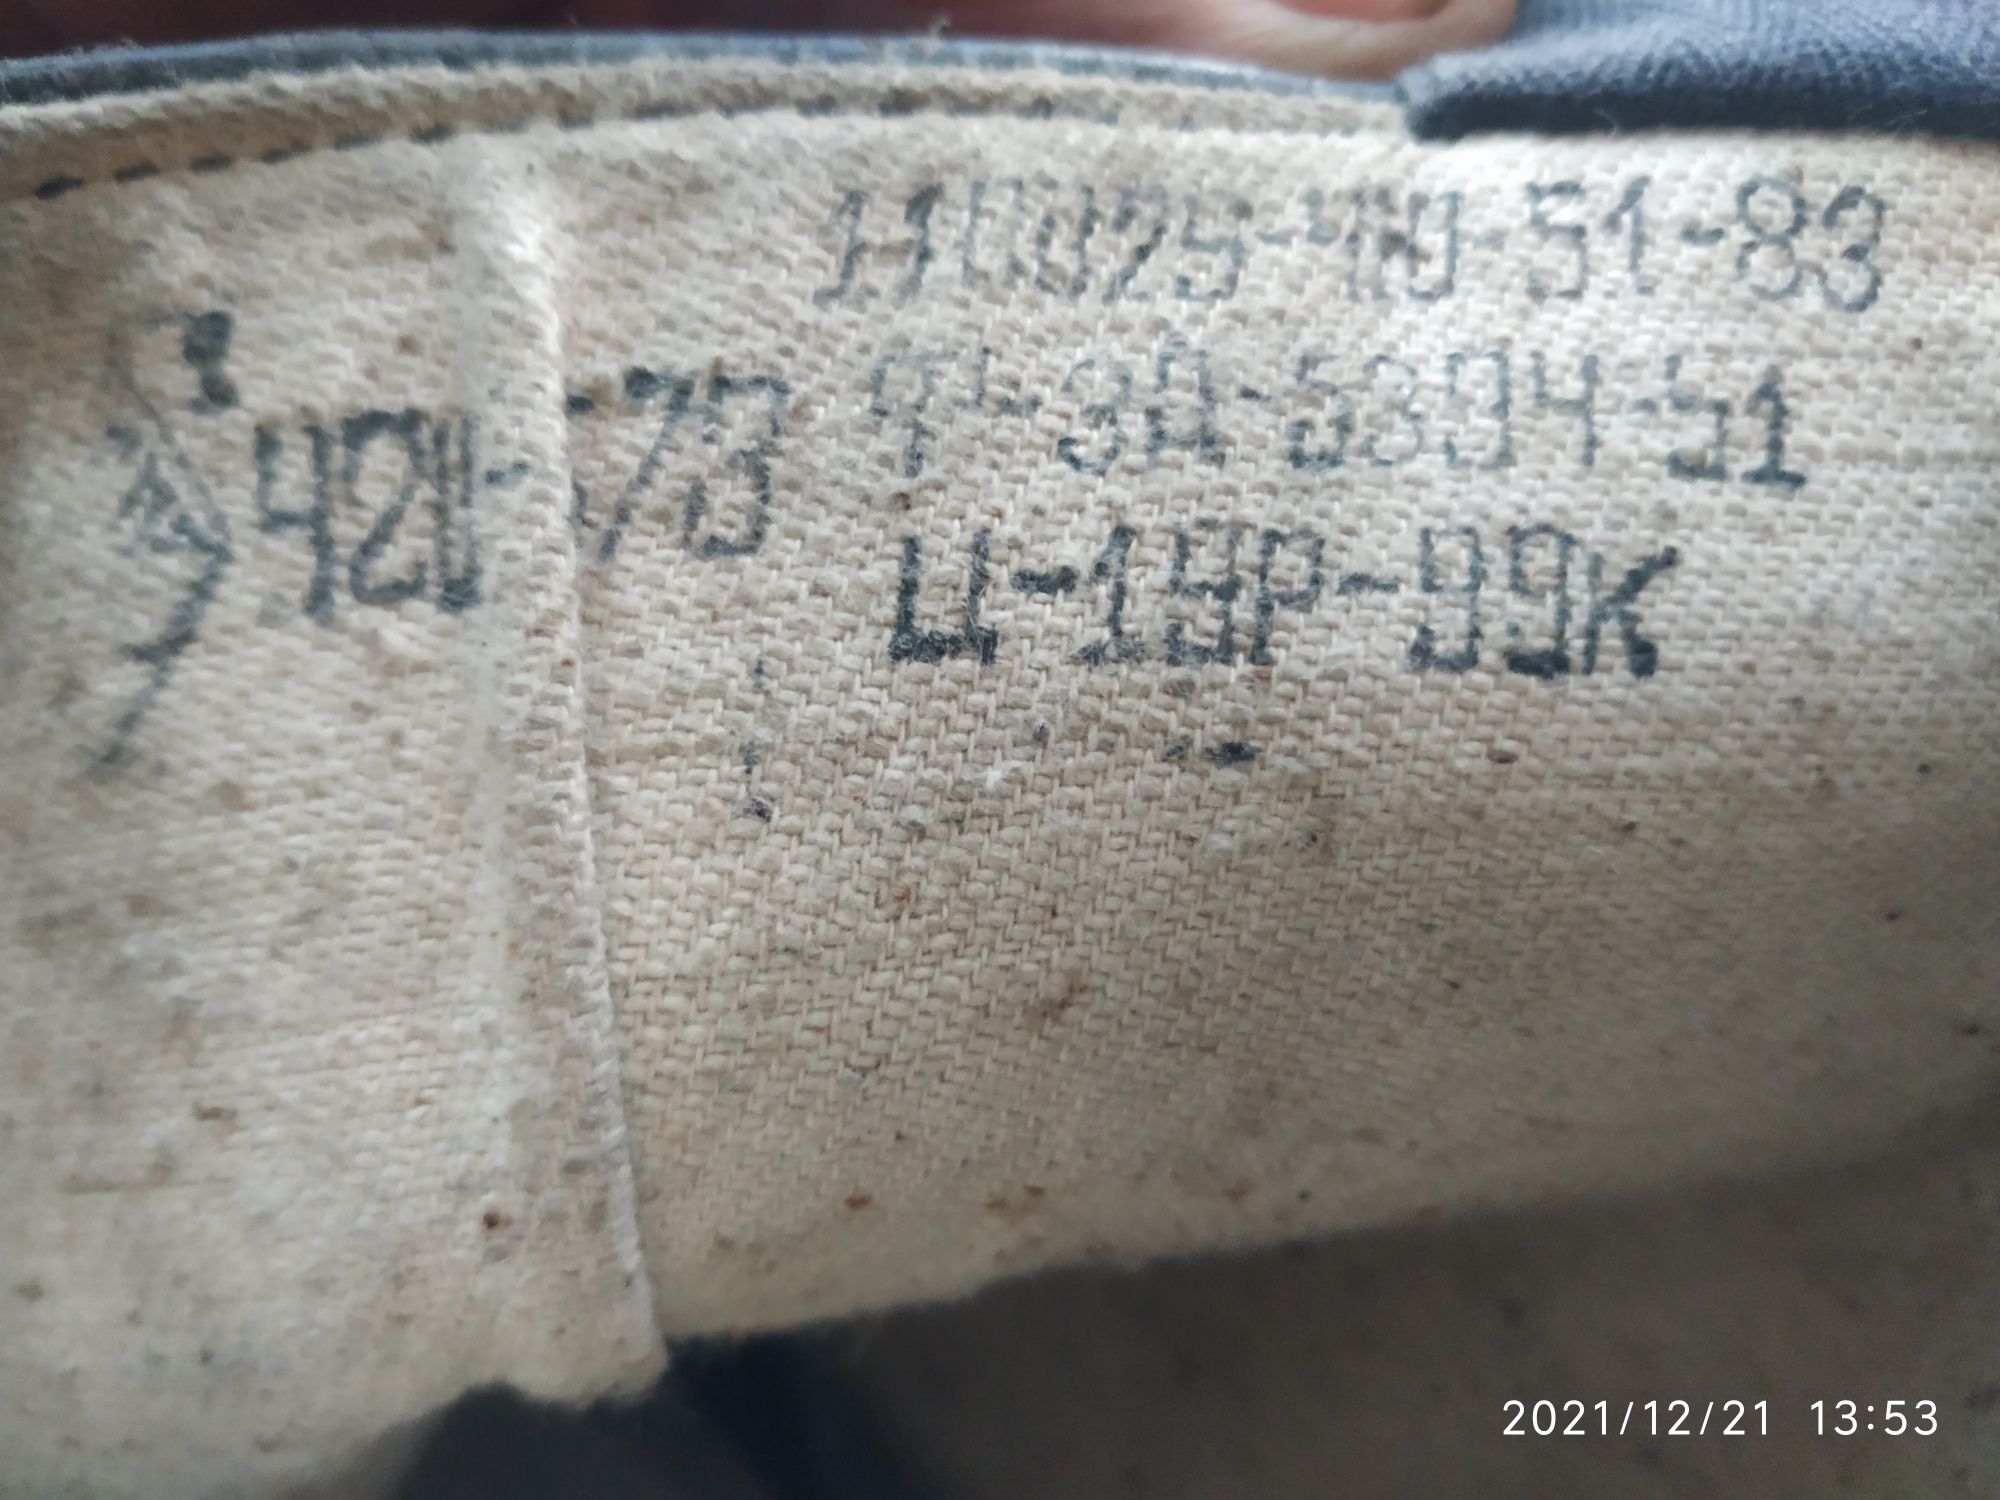 Продам кожаные сапоги времён СССР  размер 42